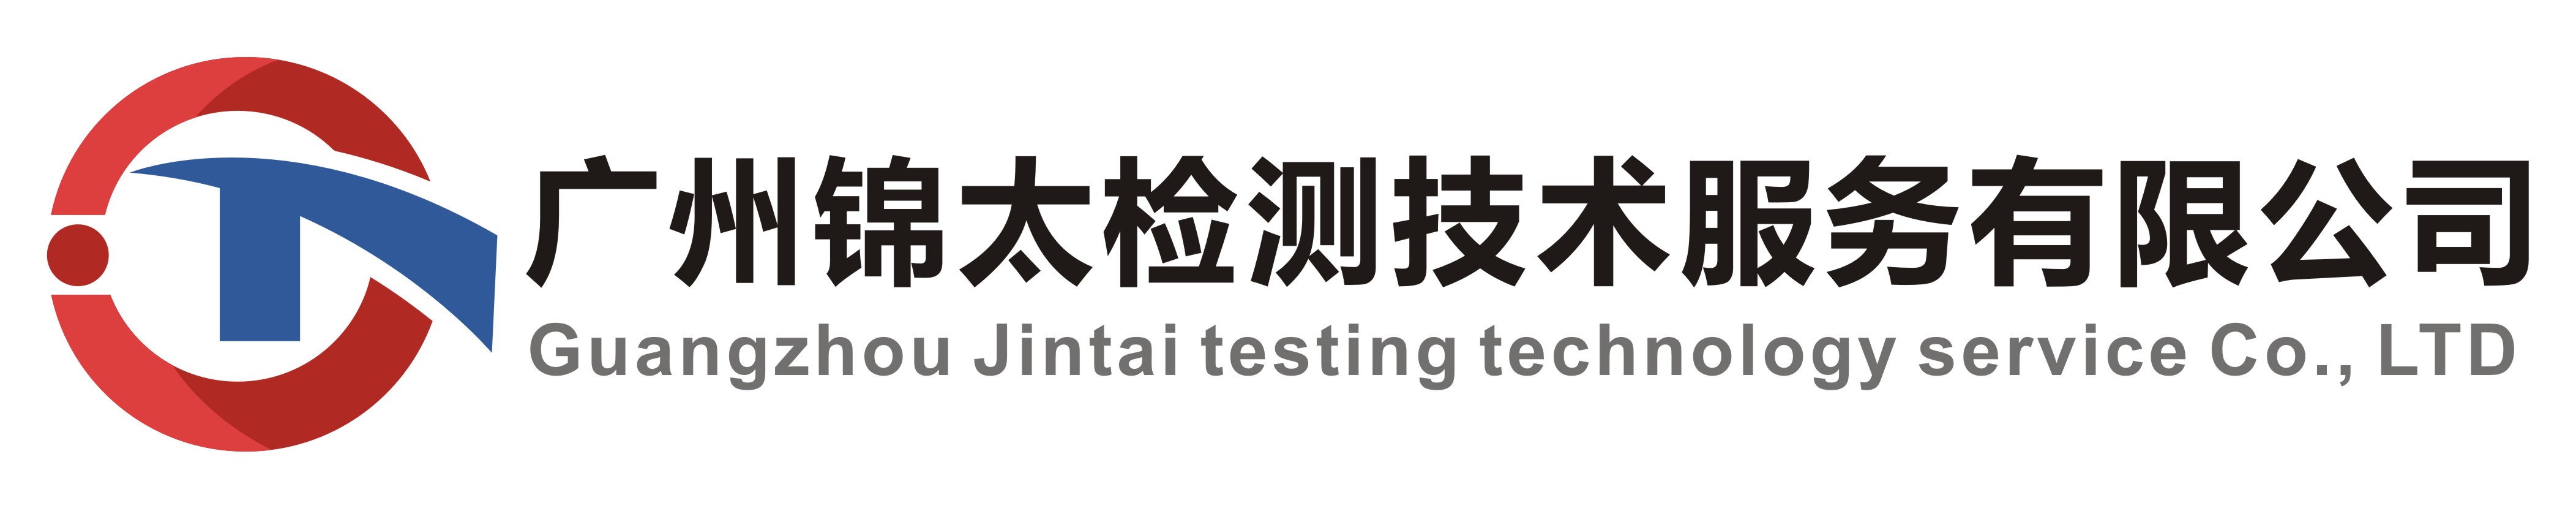 广州锦太检测技术服务有限公司